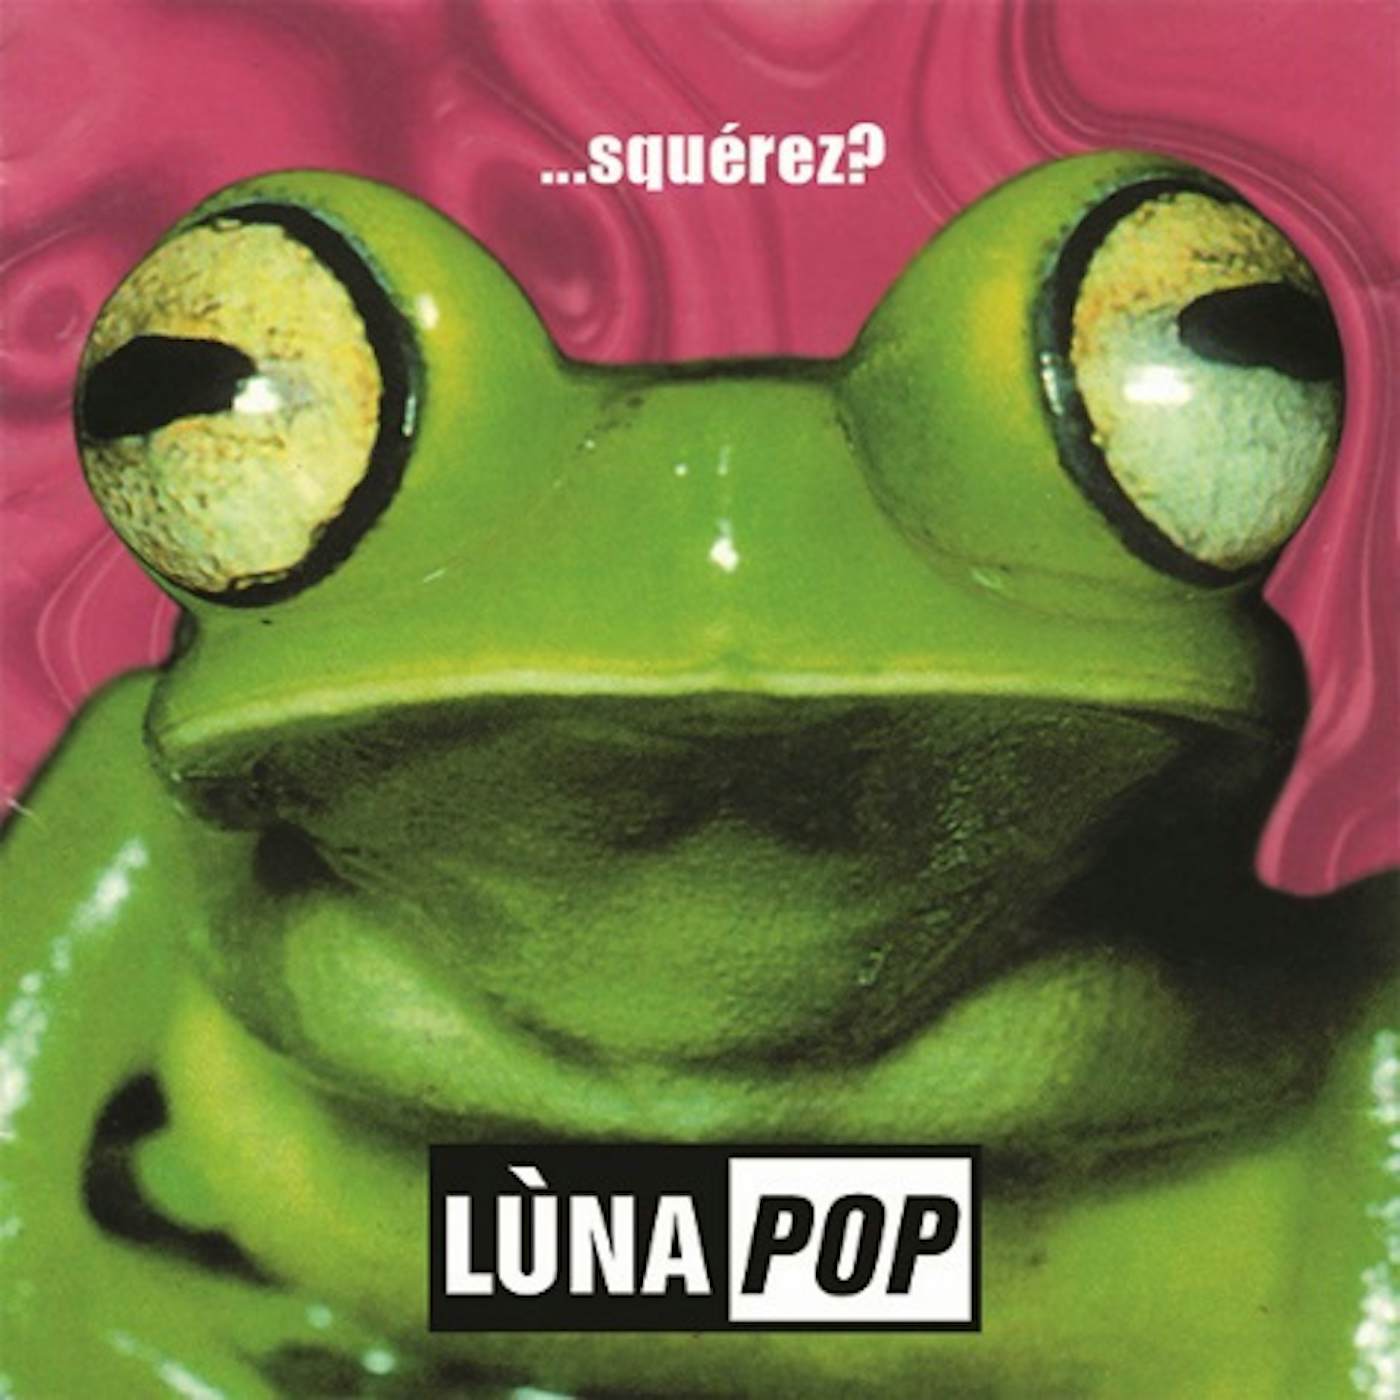 Lunapop SQUEREZ CD